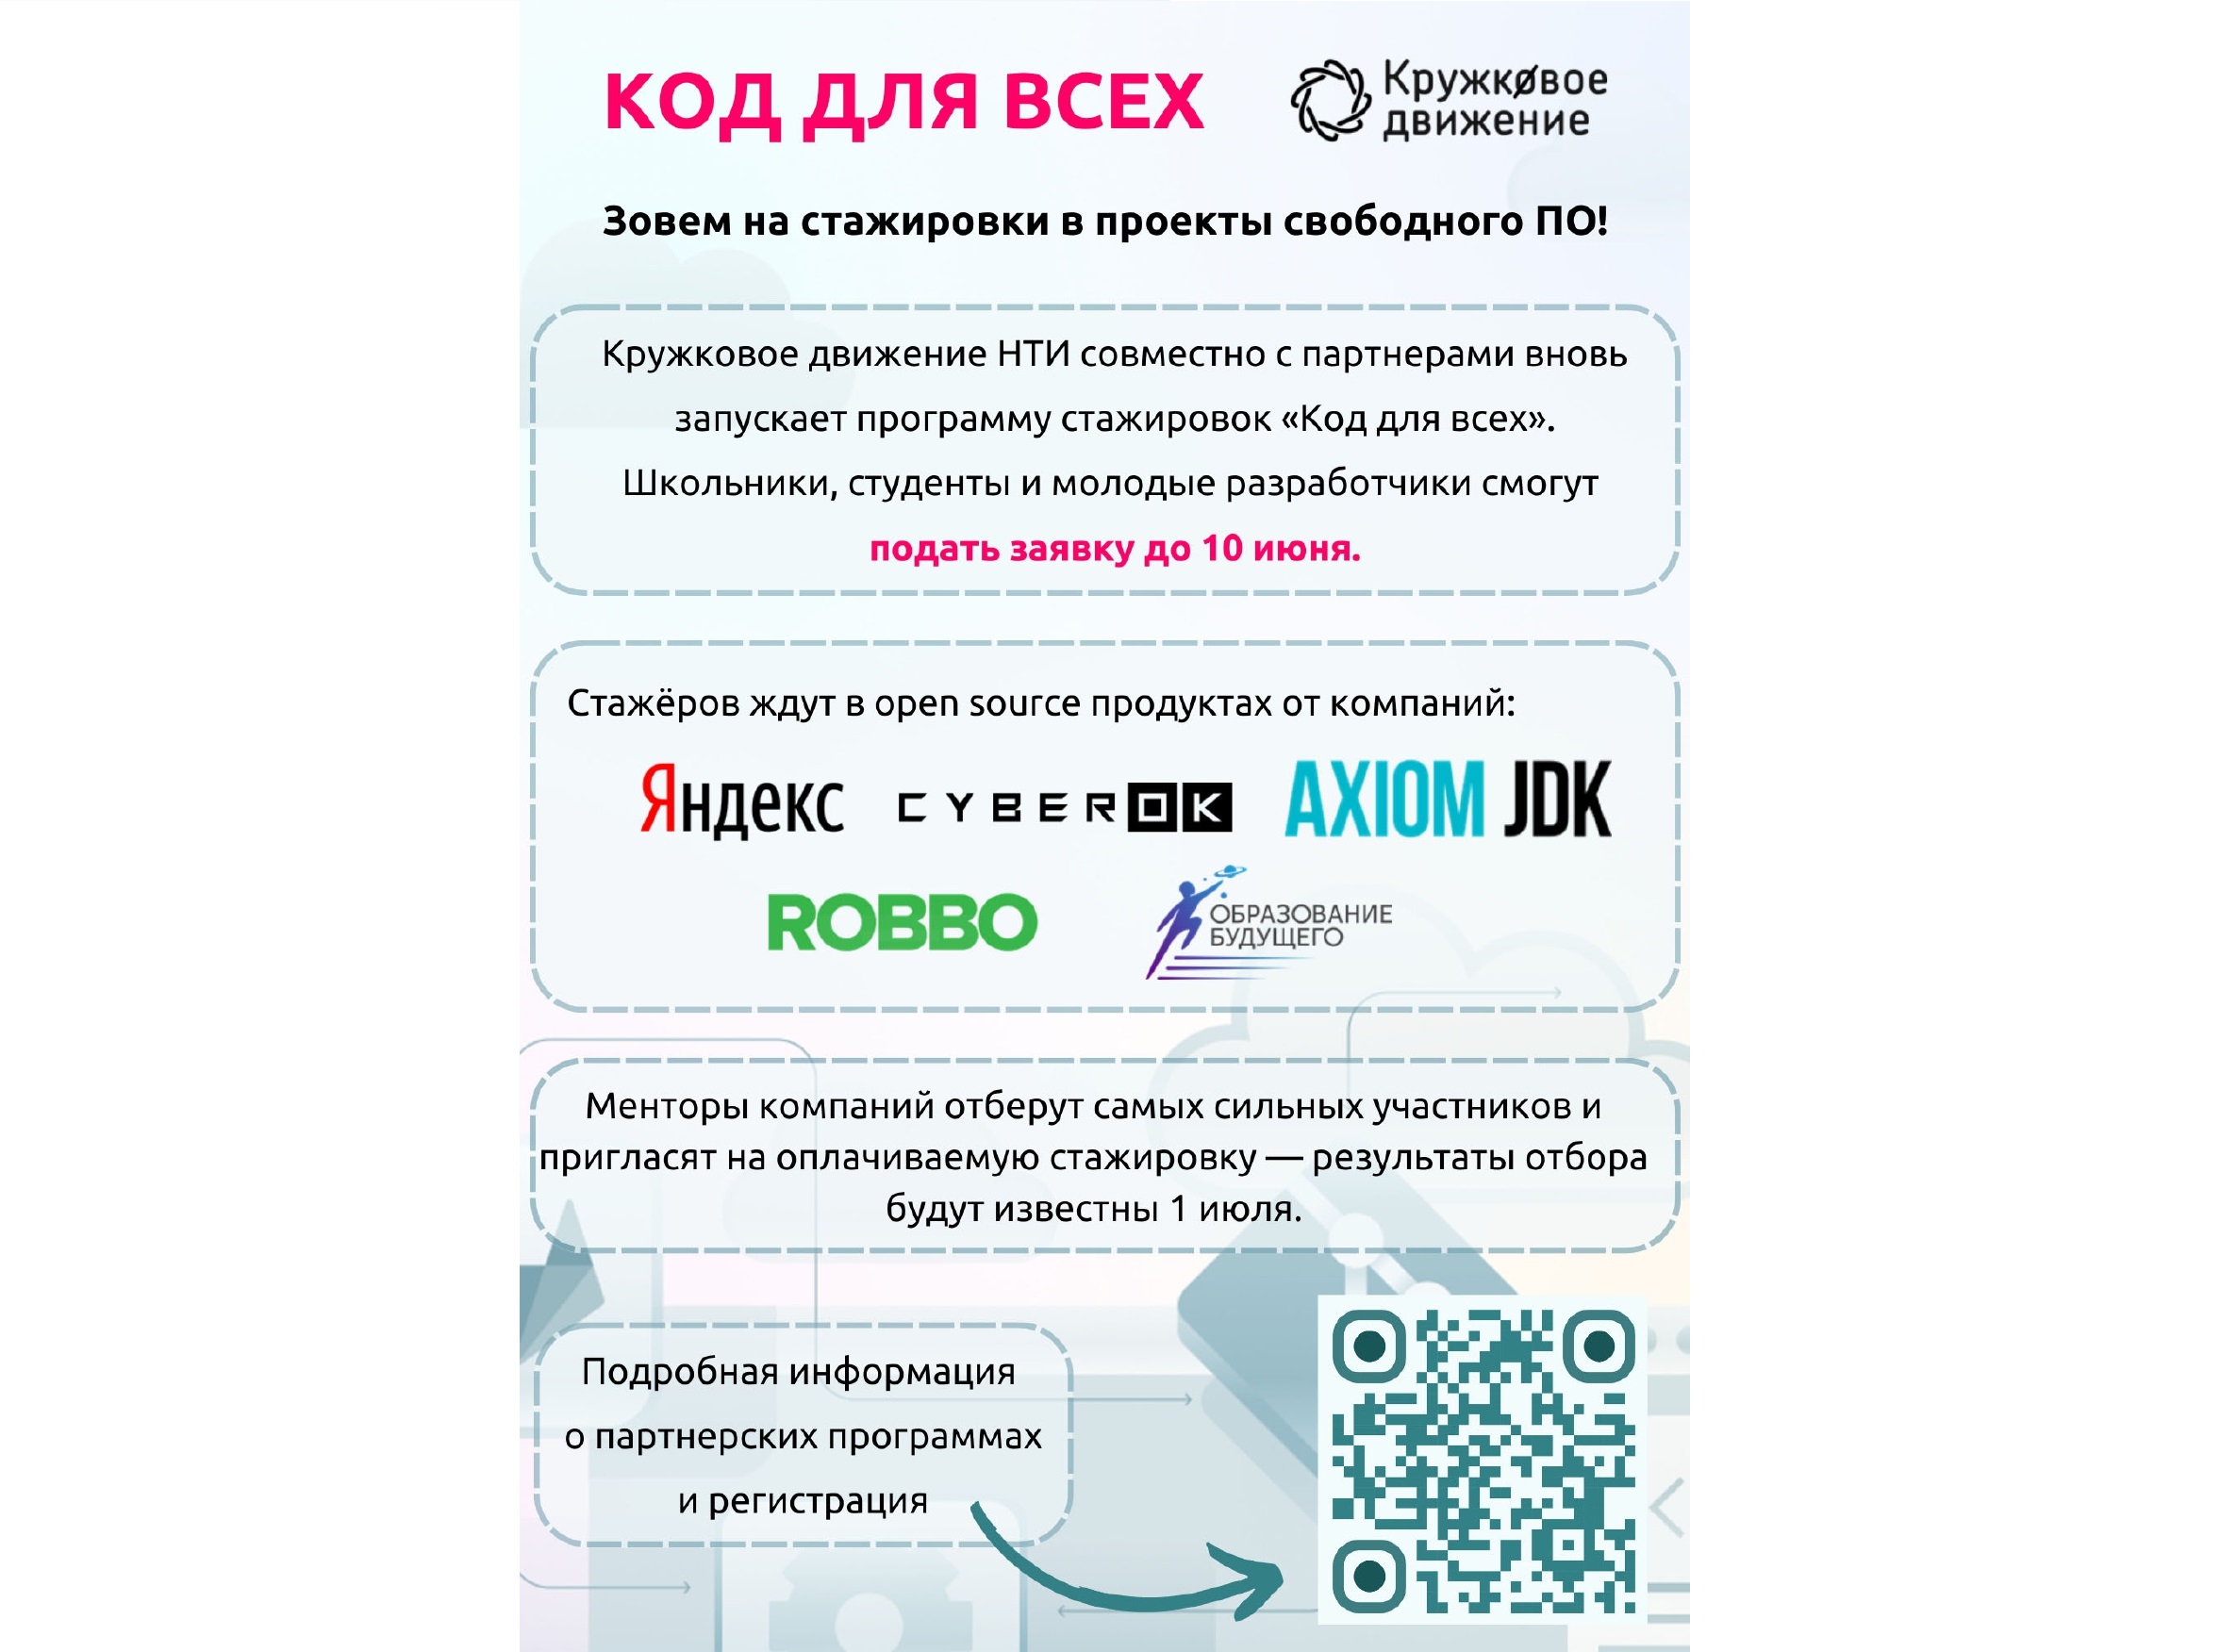 Второй сезон всероссийской программы стажировок «Код для всех»